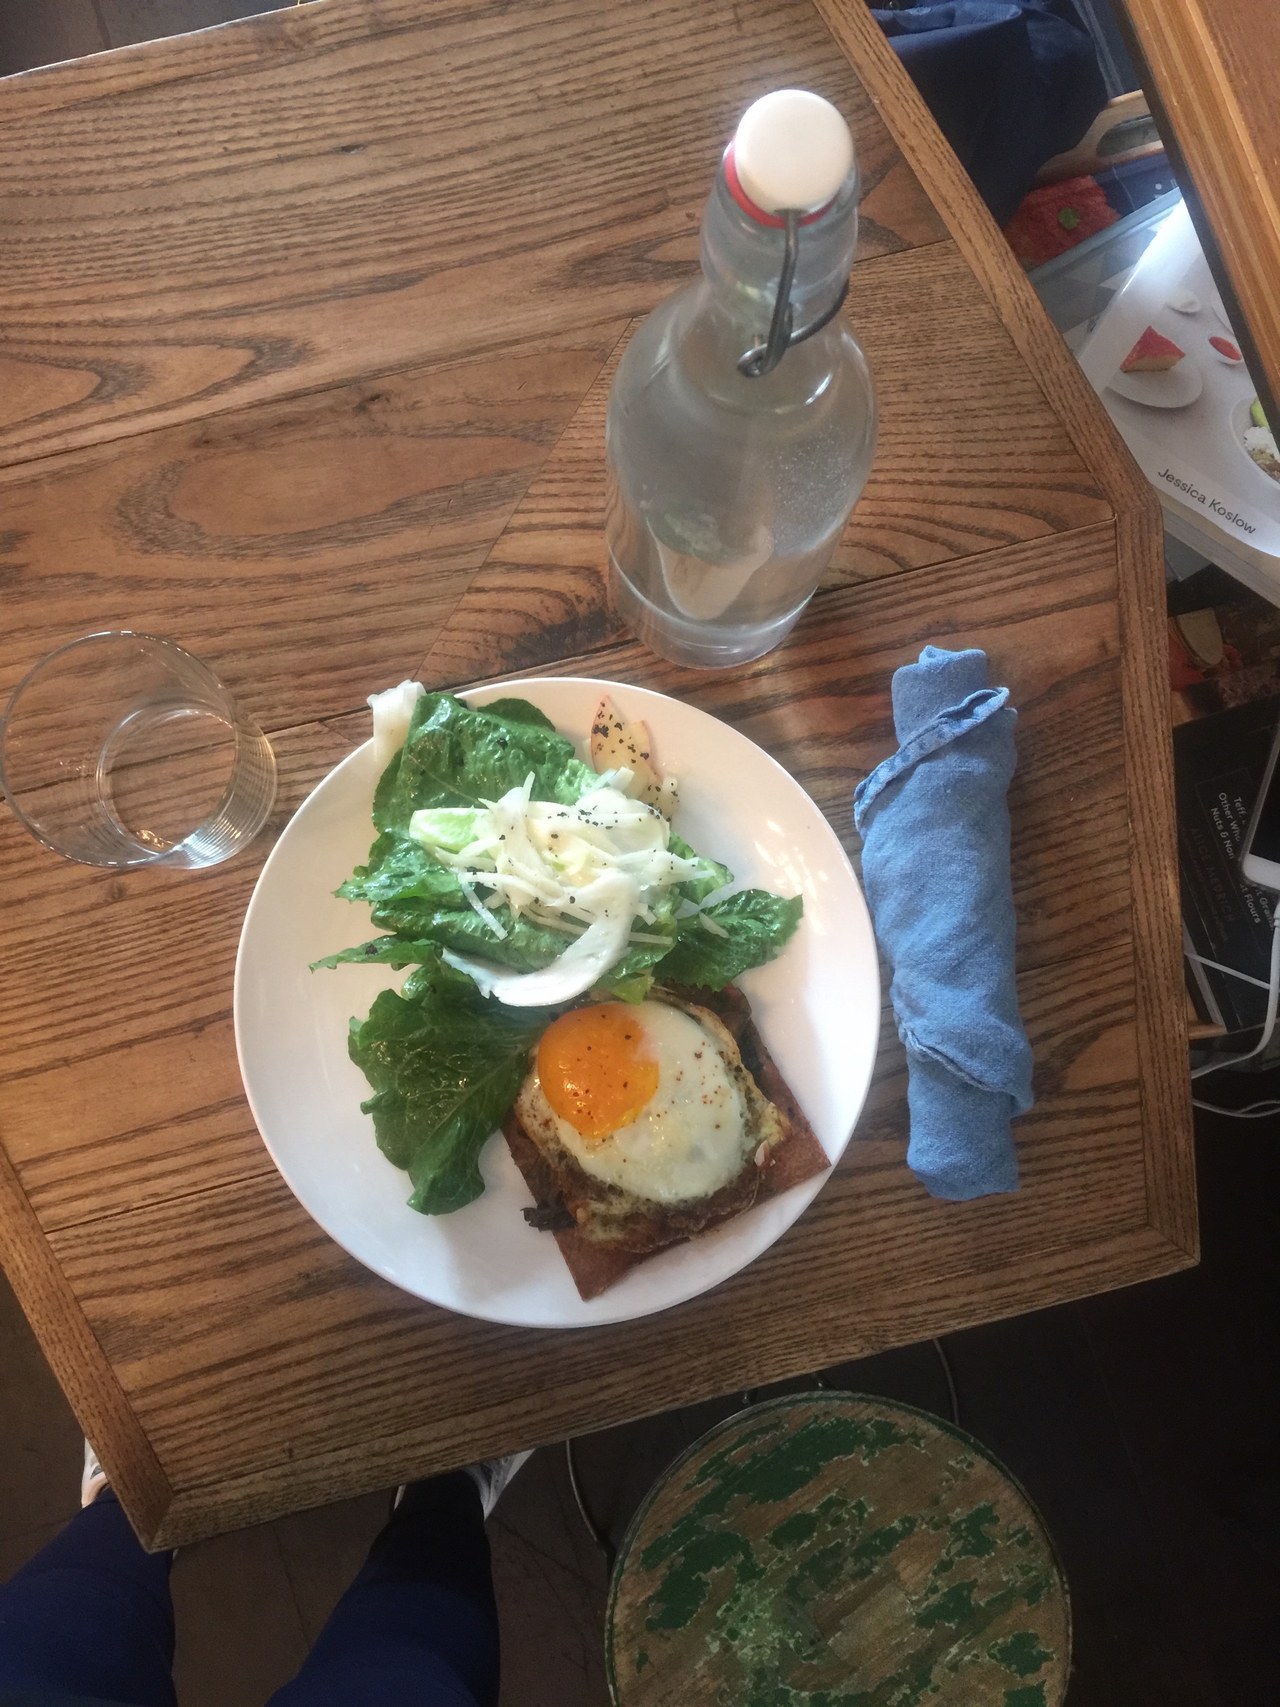 蛋 and salad at a healthy NYC eatery!